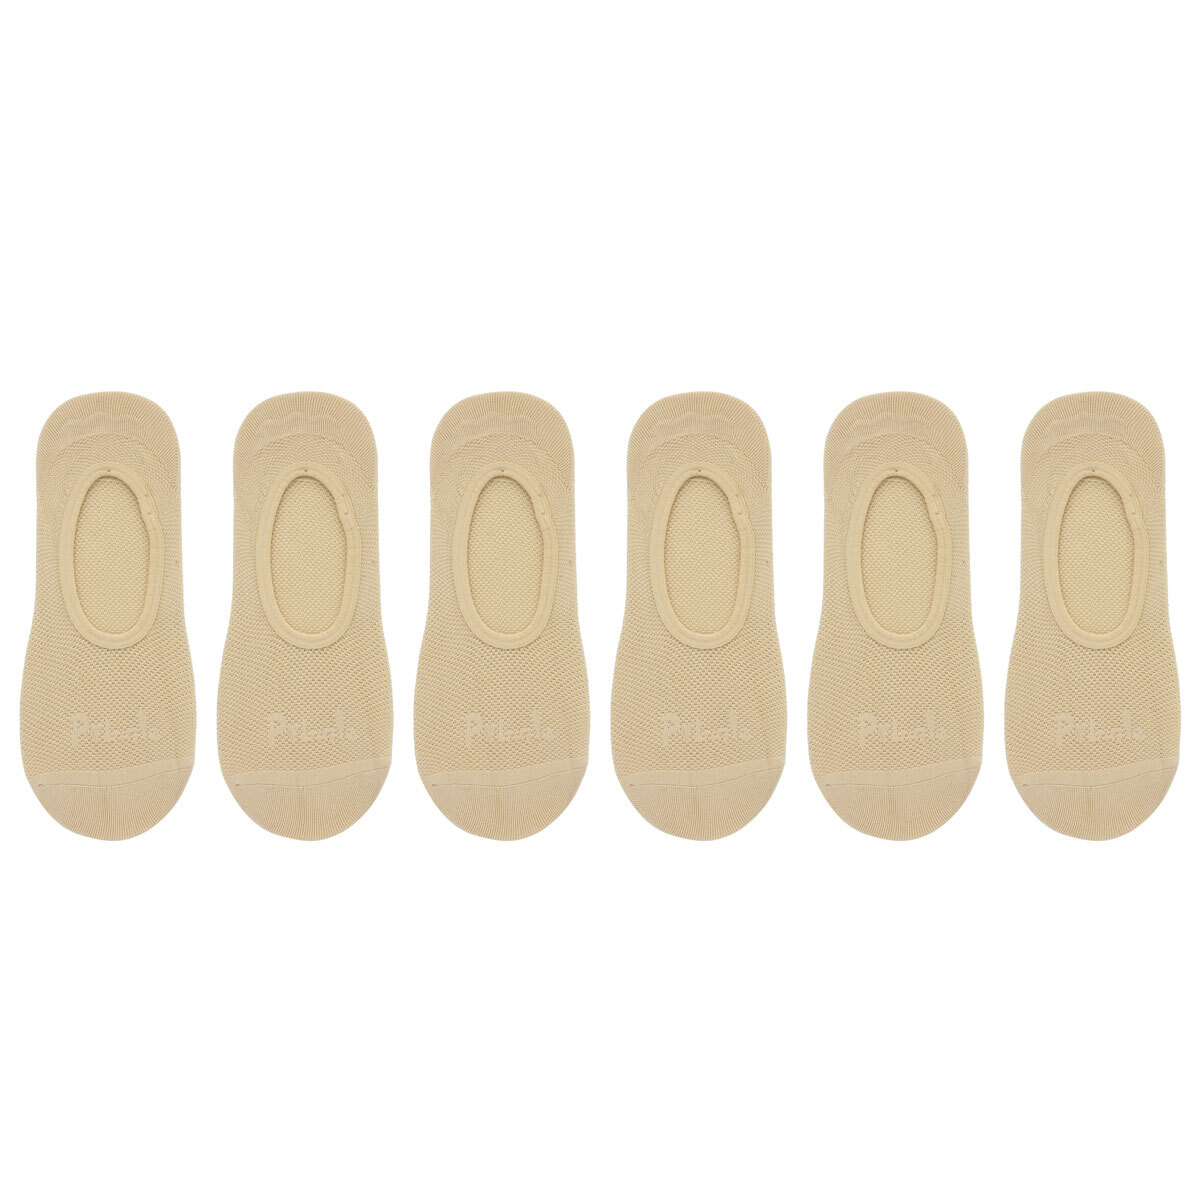 Pringle Men's 2 x 3 Pack Invisible Socks in Beige, Size 7-11